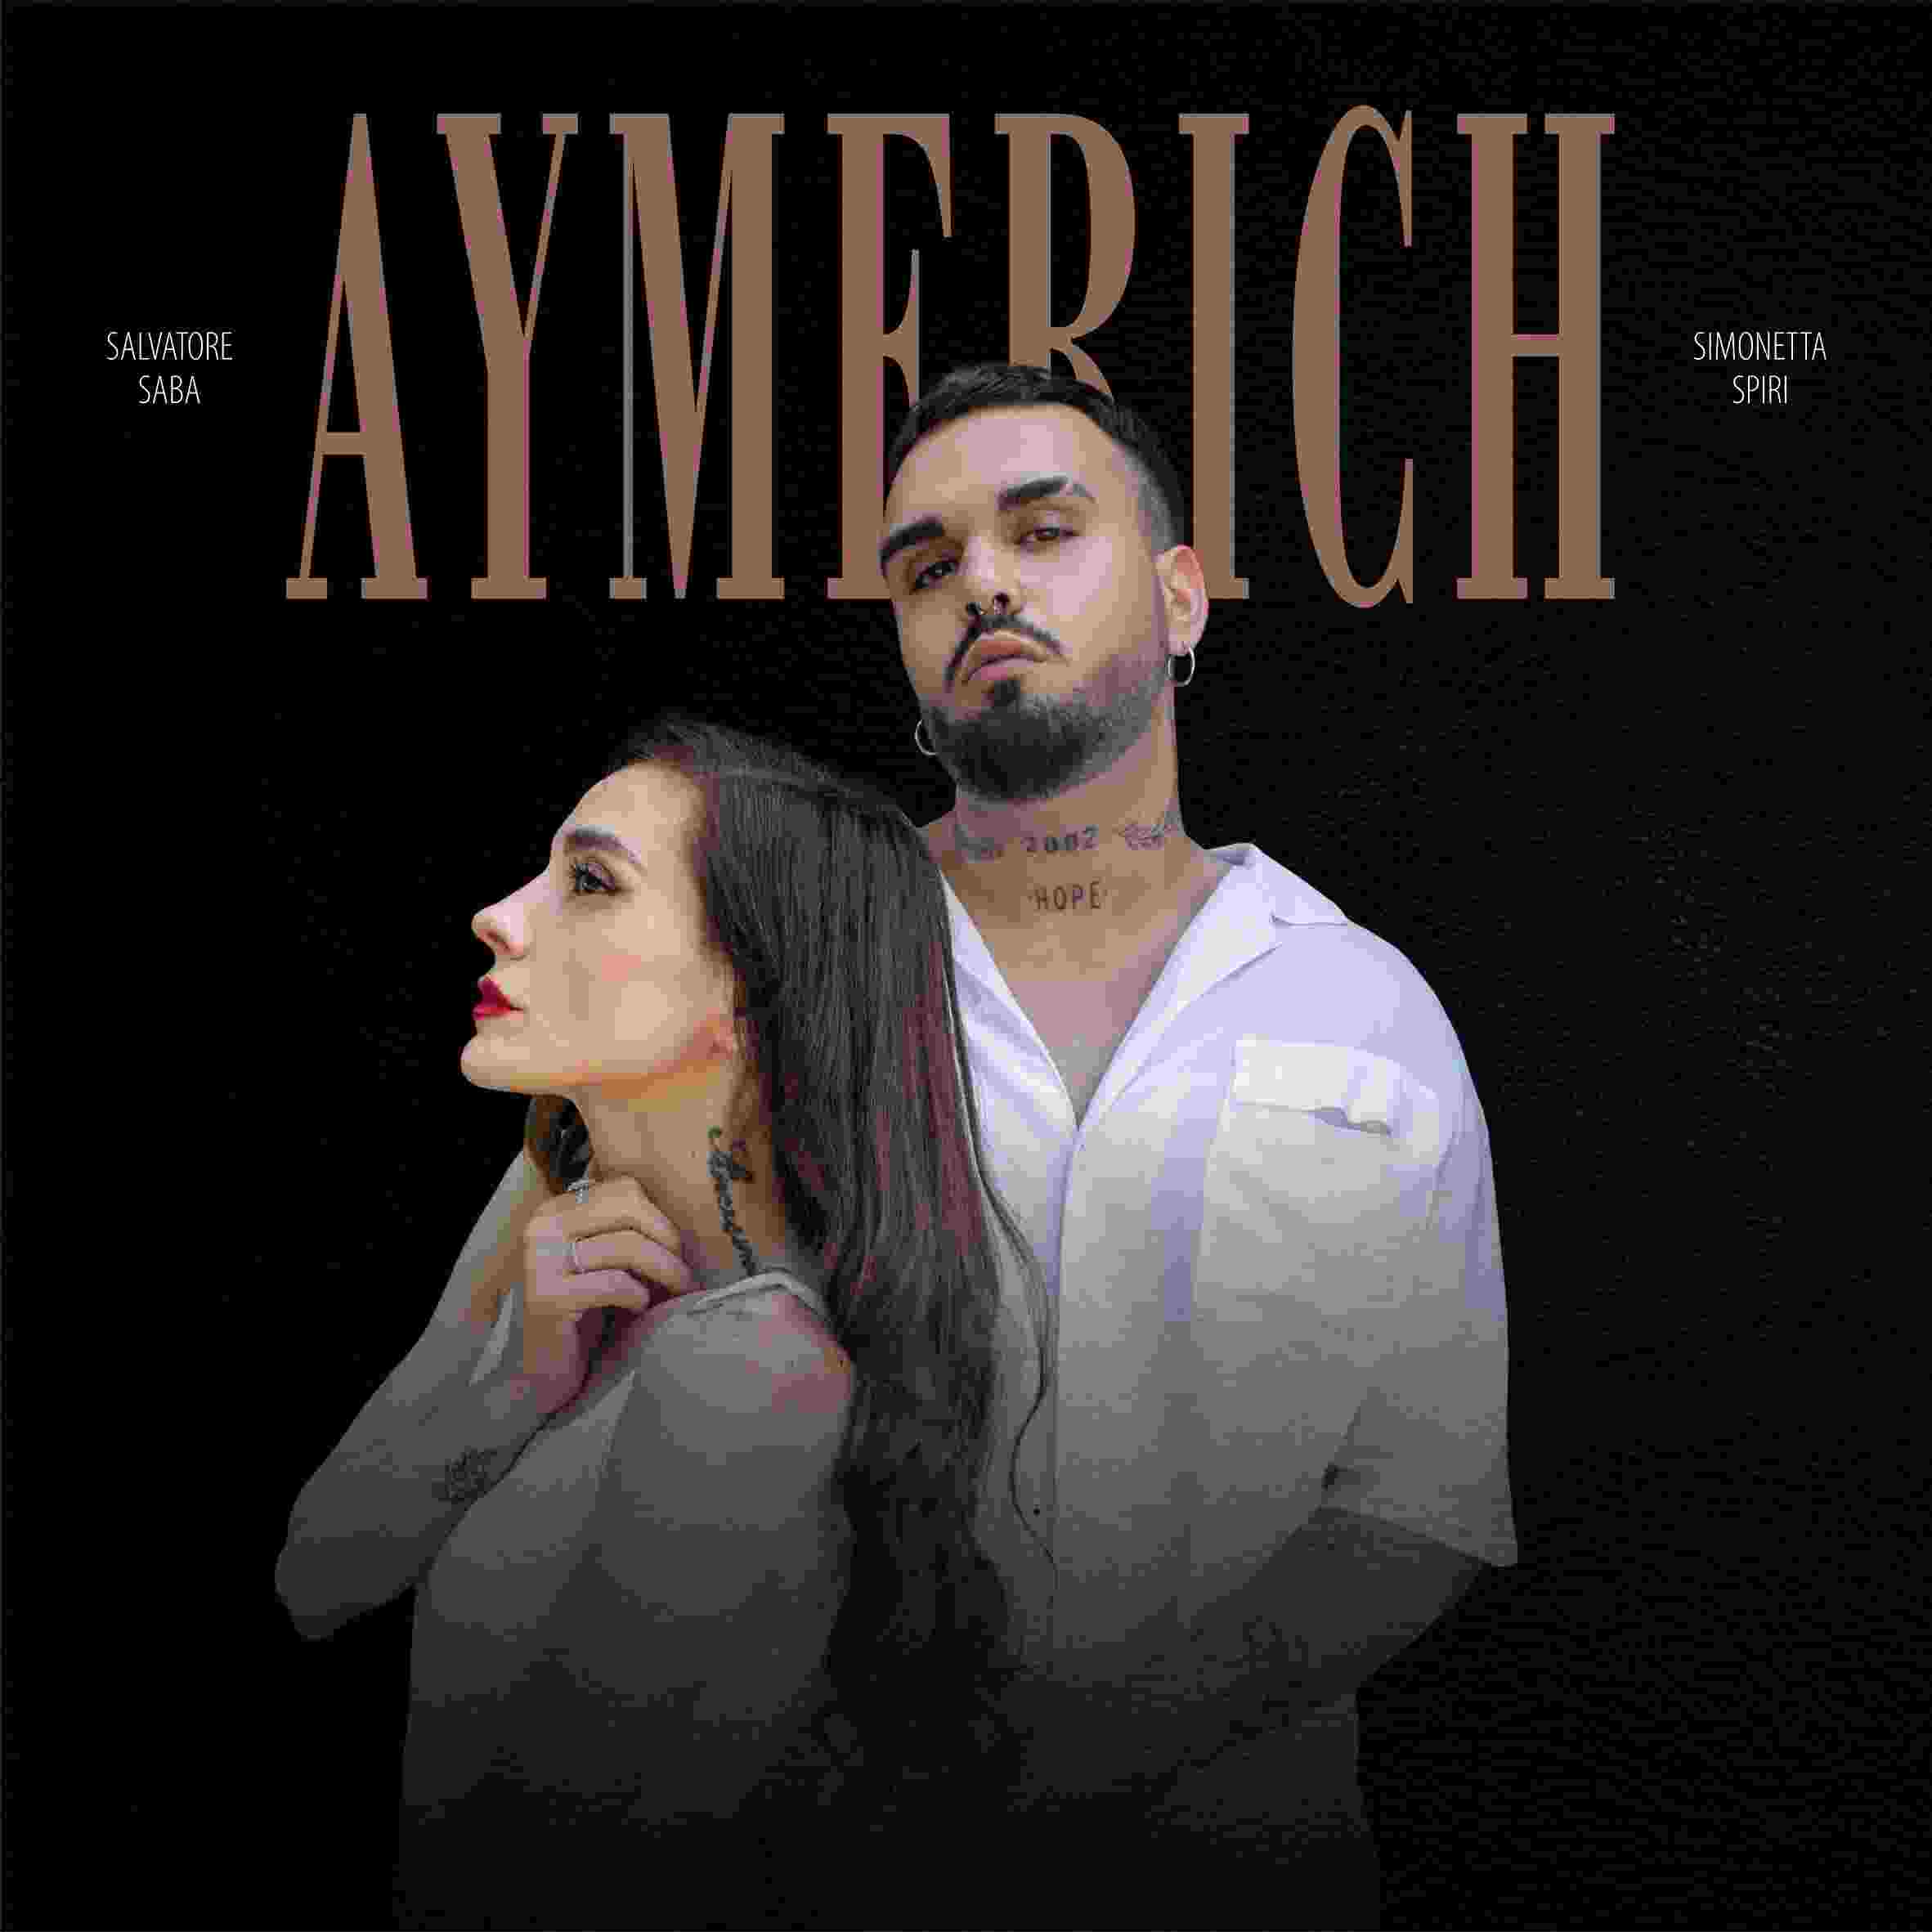 SALVATORE SABA feat. SIMONETTA SPIRI, “Aymerich” è il nuovo singolo dell'artista sardo